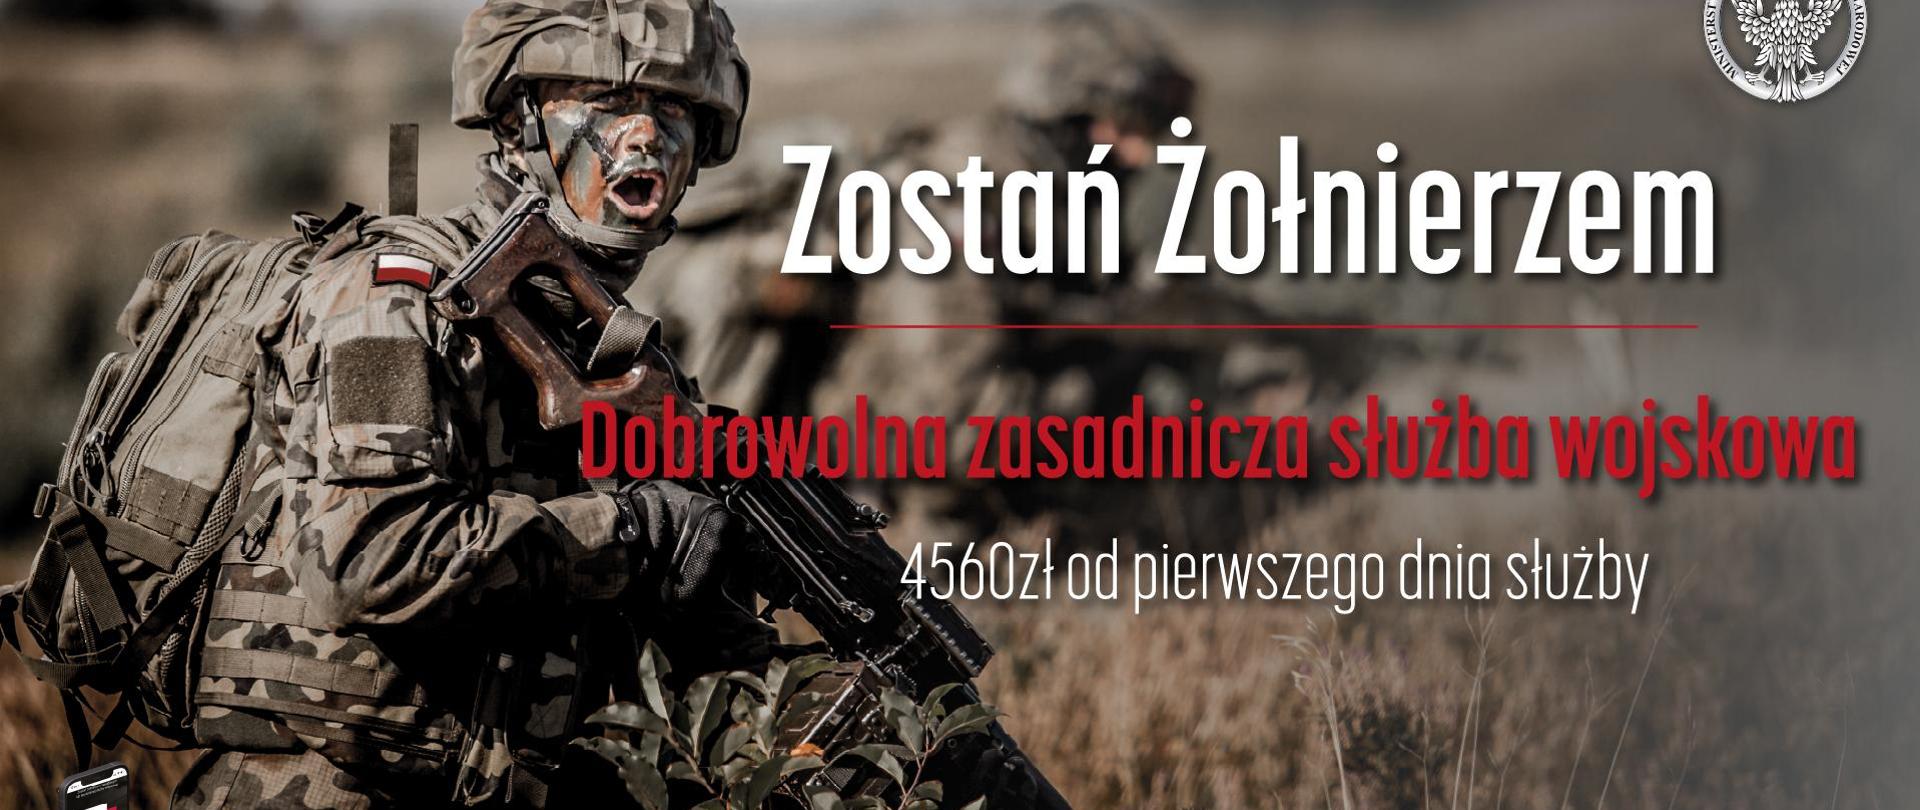 Zostań żołnierzem - dobrowolna zasadnicza słuzba wojskowa, 4560 zł od pierwszego dnia służby. Szczegółowe informacje i rejestracja na www.zostanzolnierzem.pl